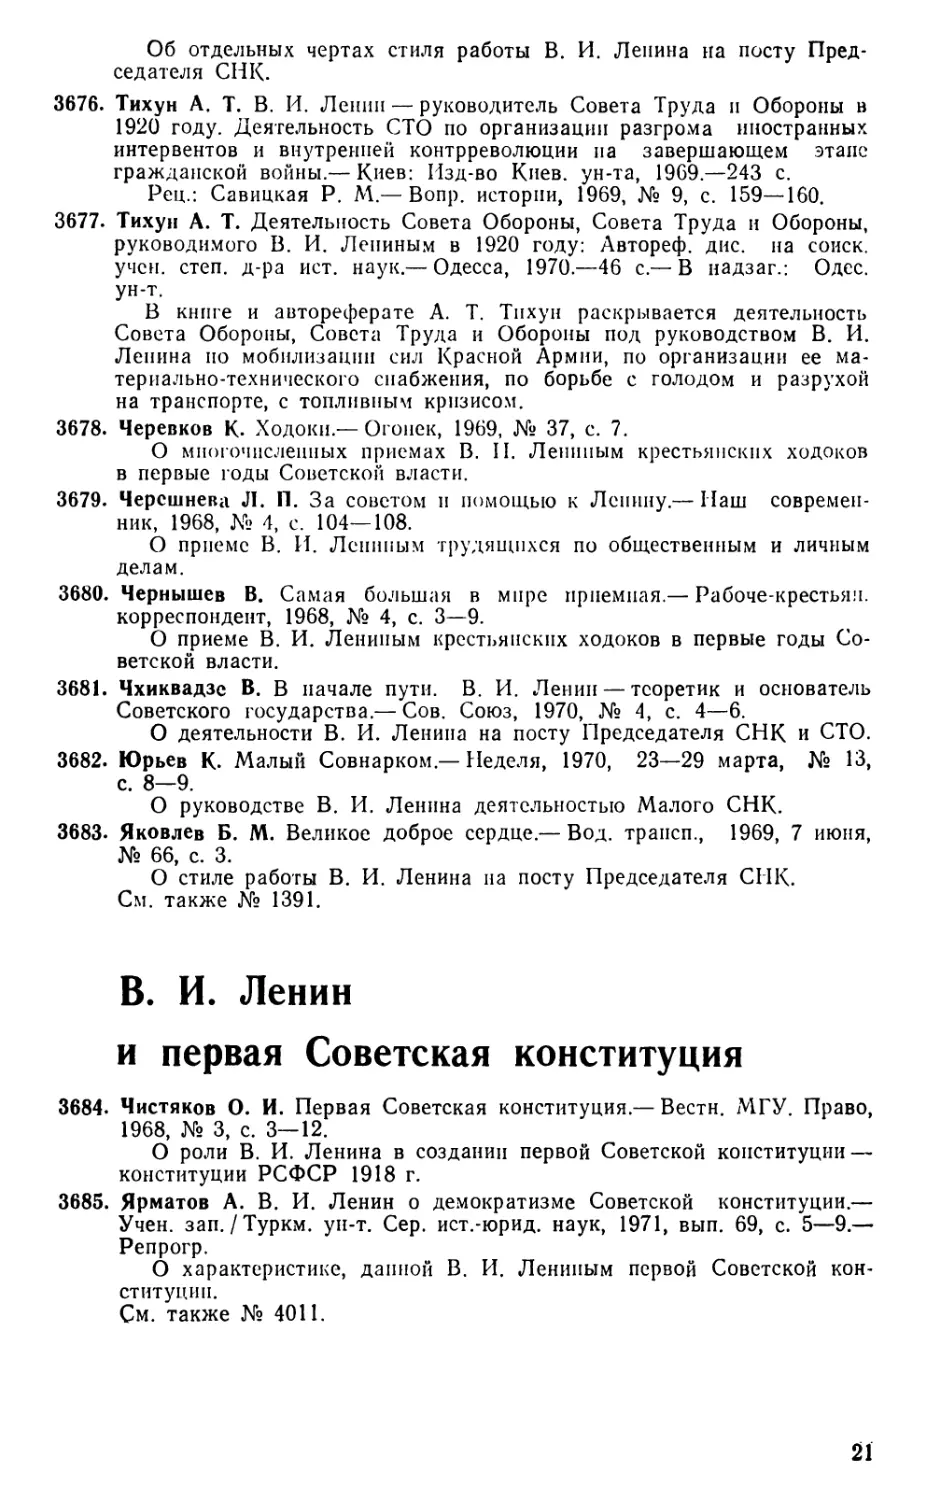 В. И. Ленин и первая Советская конституция